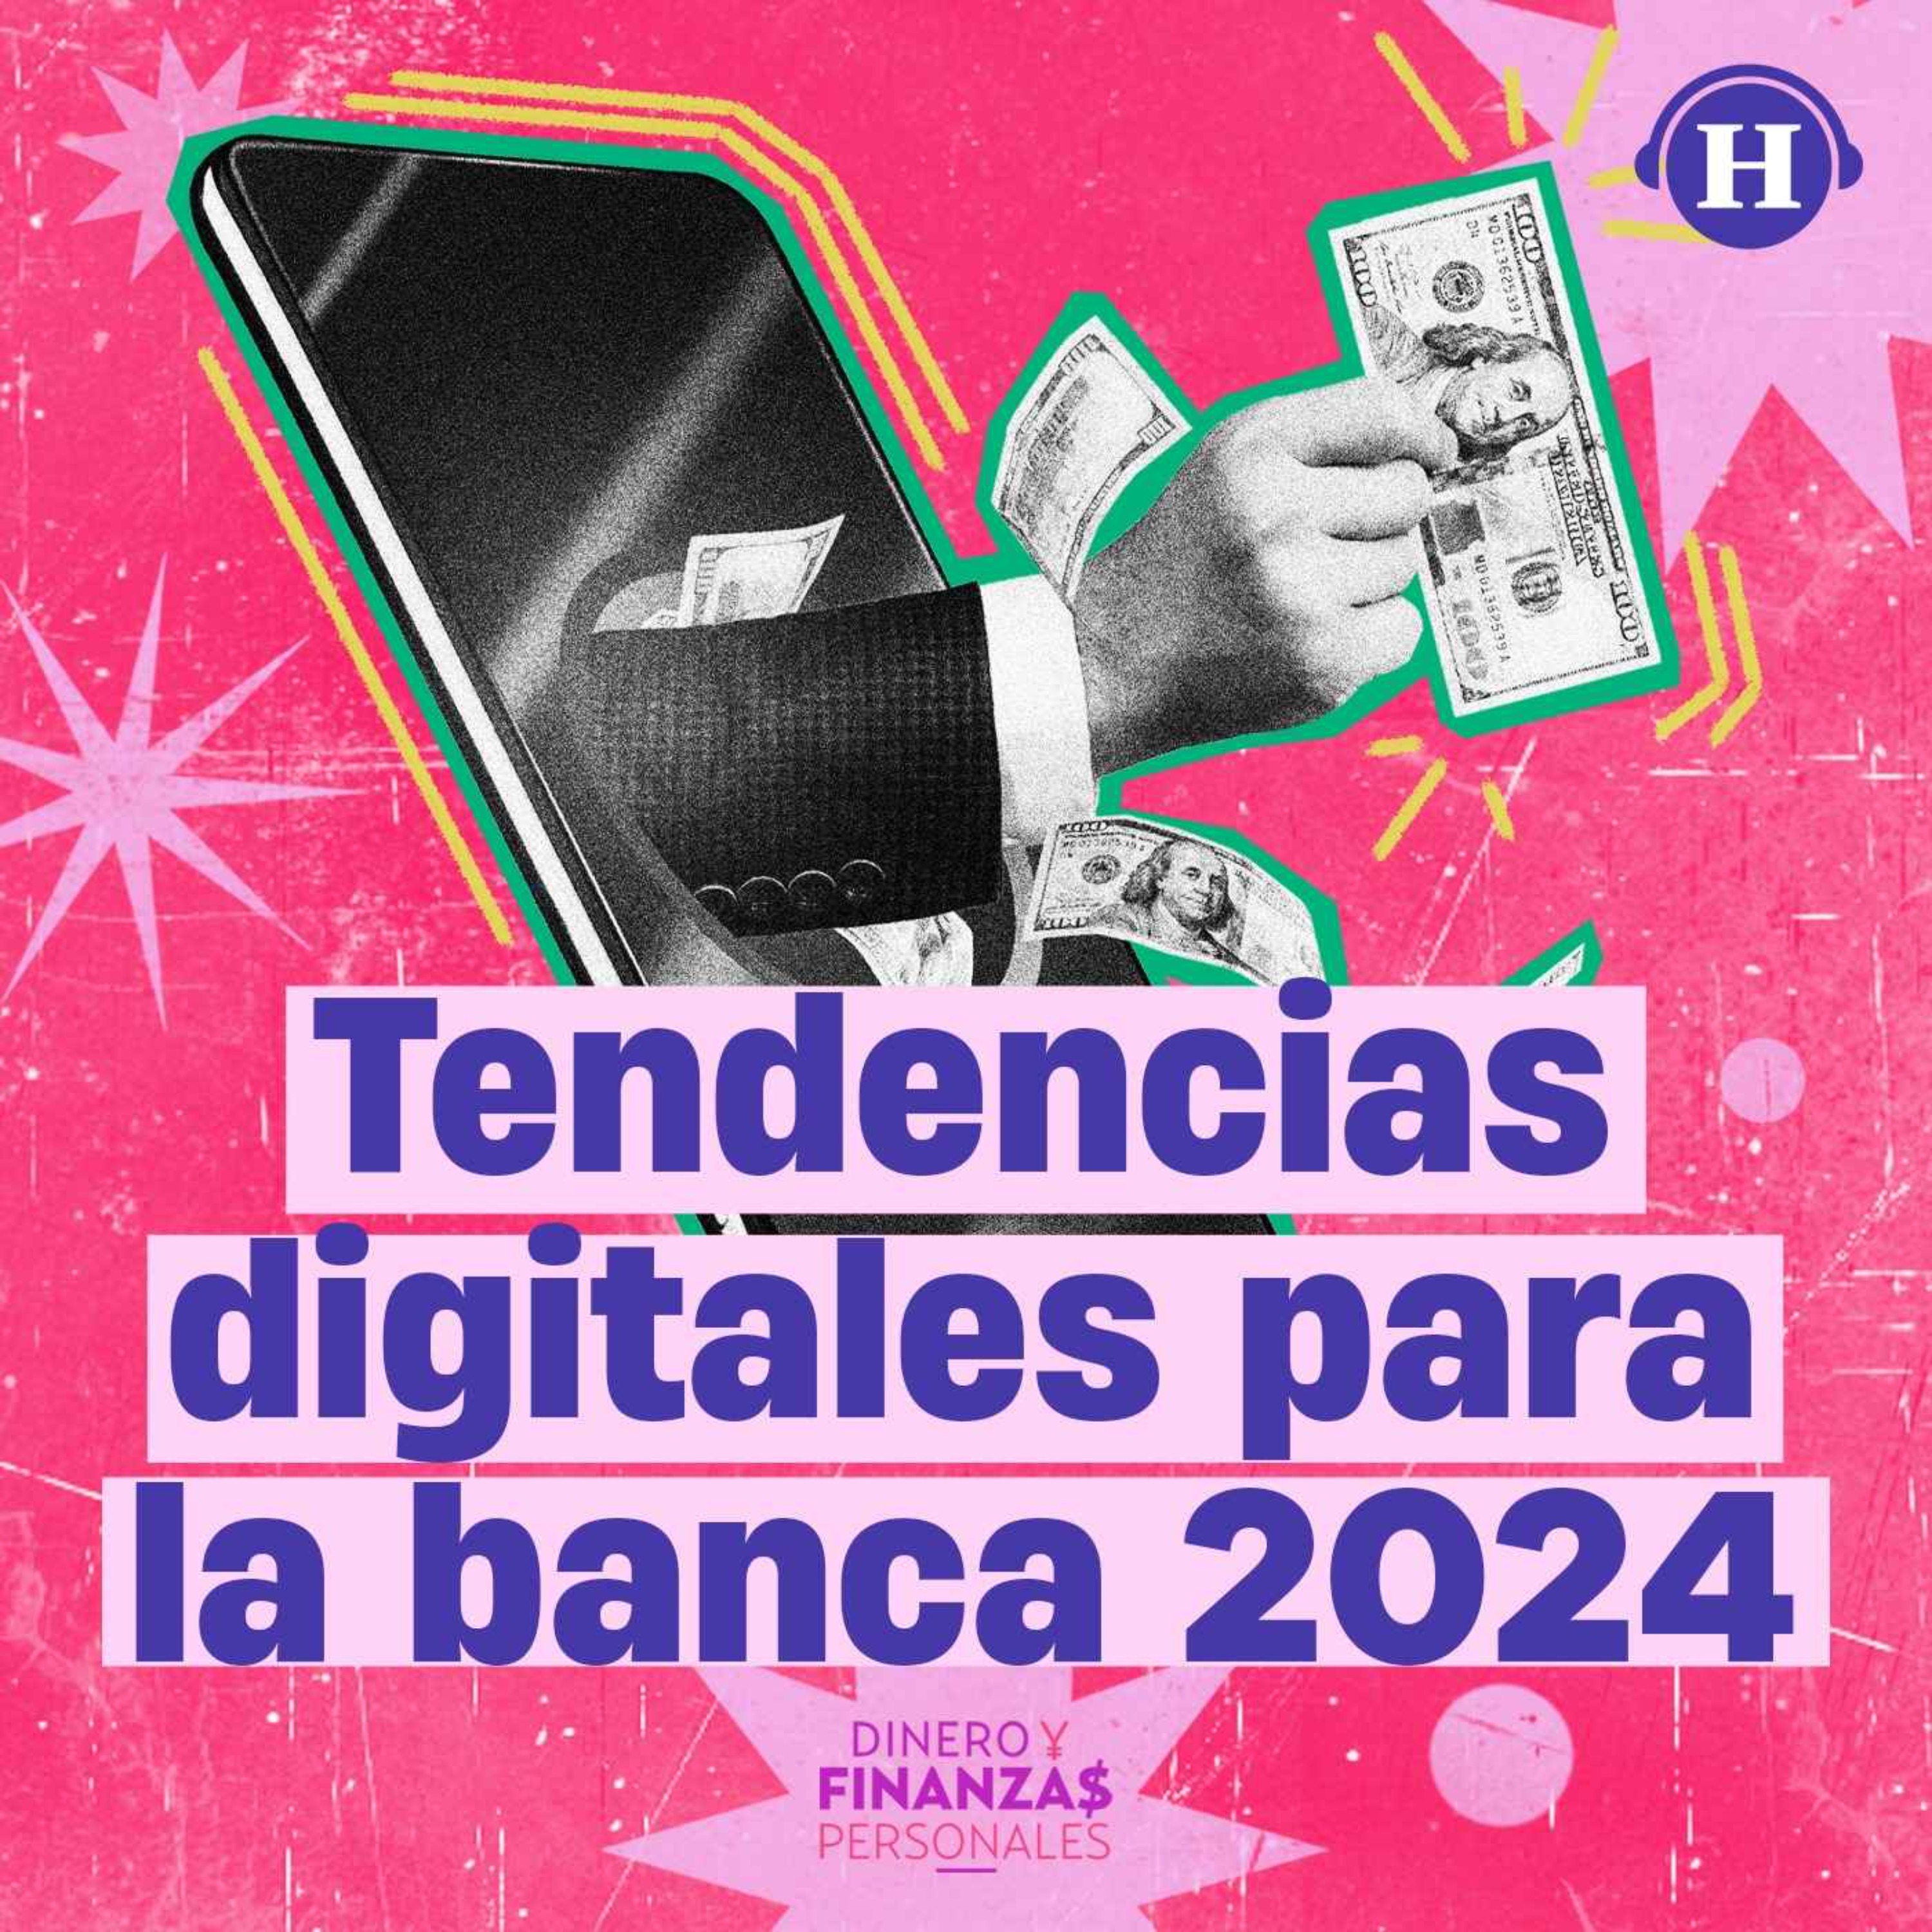 Tendencias digitales para la banca 2024